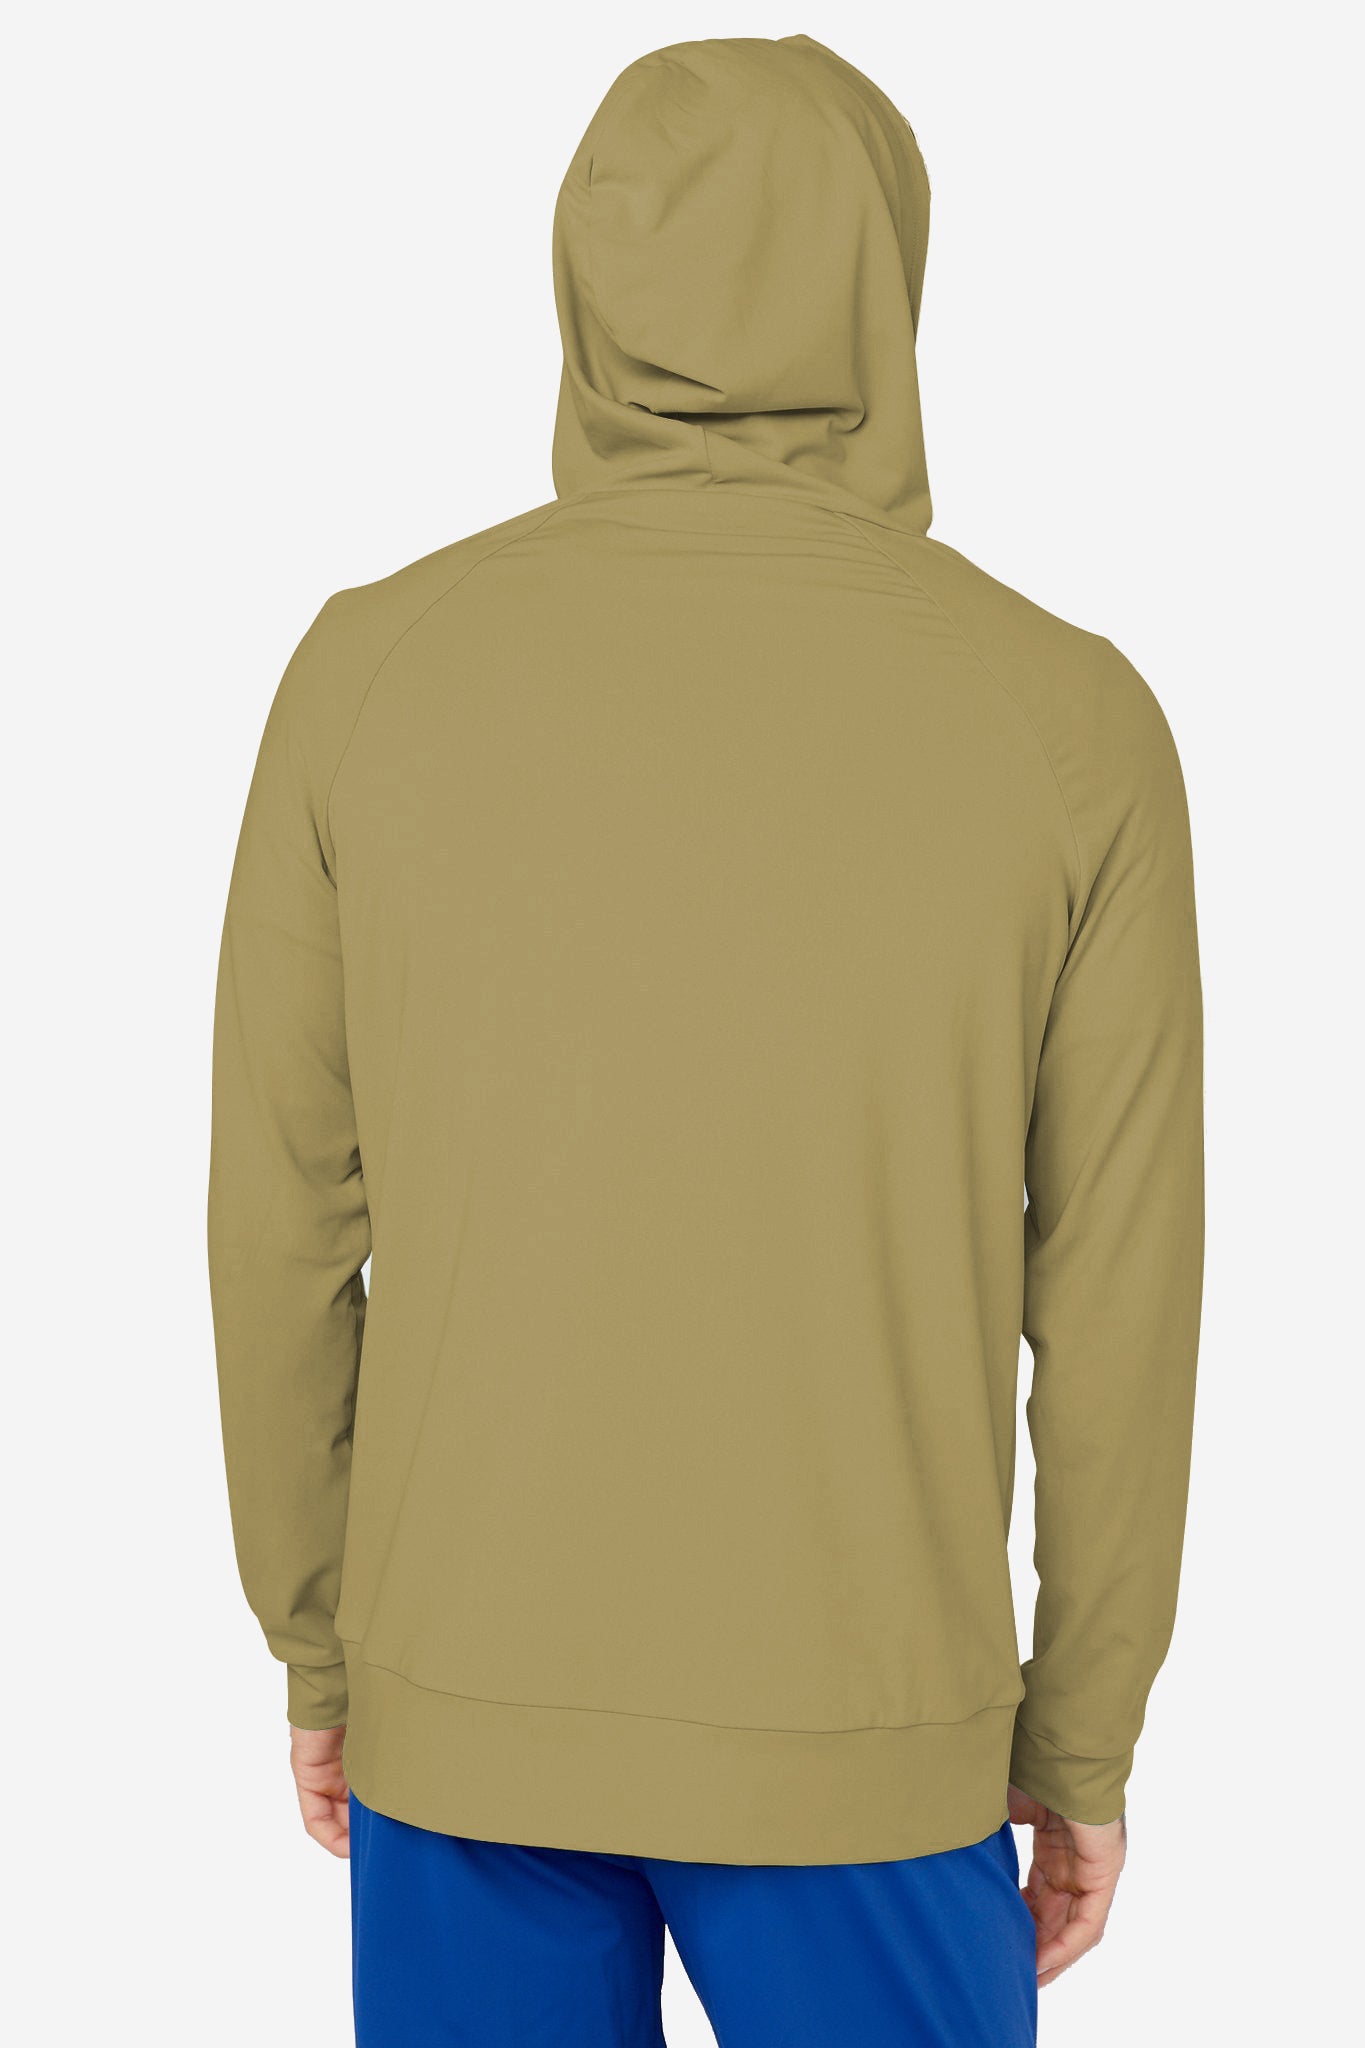 Image of the larkin hoodie in calliste green